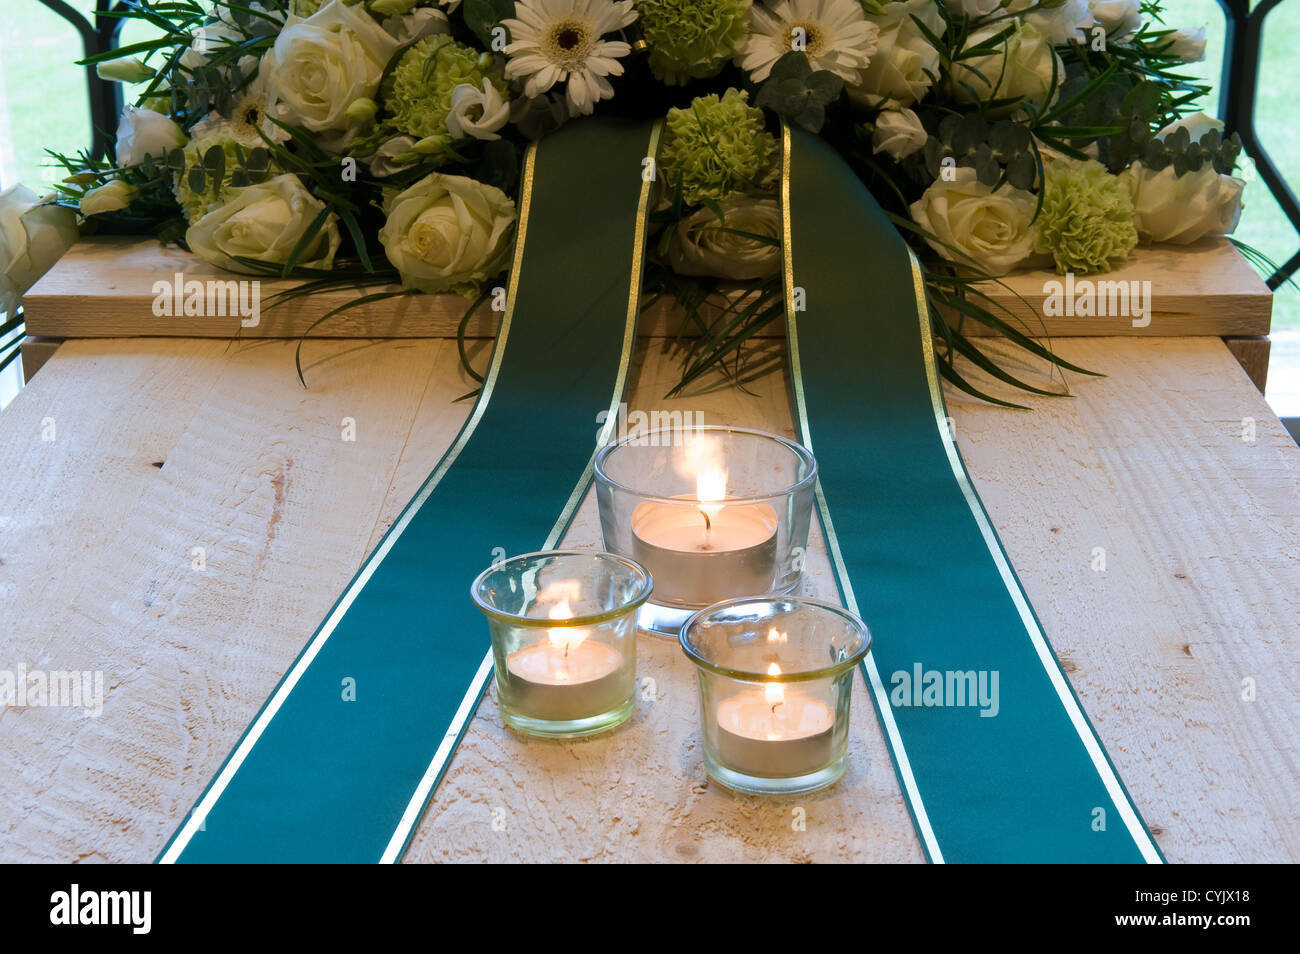 Una bara in un crematorio con una disposizione di fiori e candele accese su di esso Foto Stock